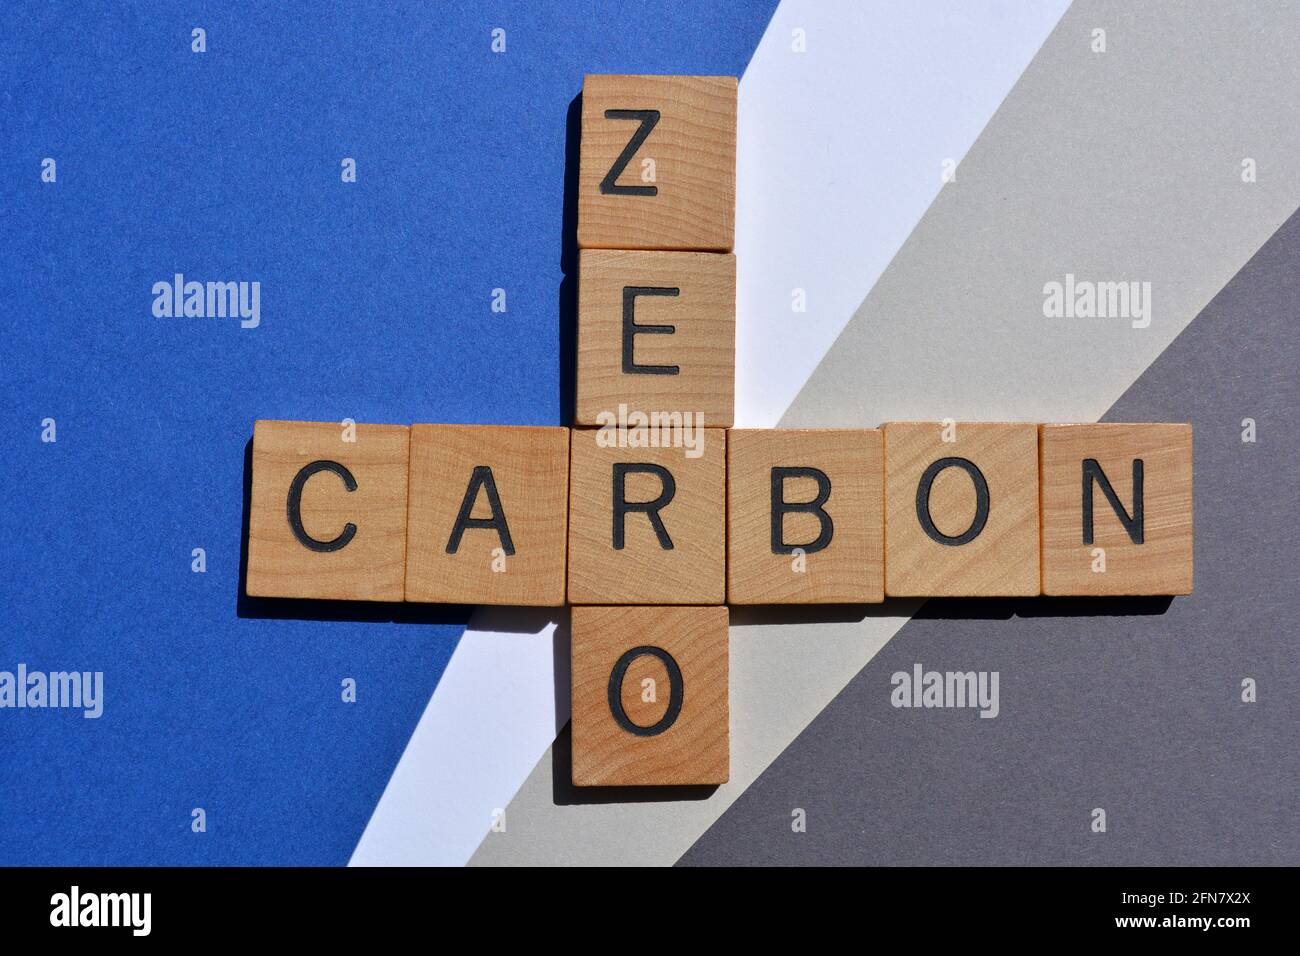 Zero, carbonio, parole in lettere alfabetiche in legno in forma di croceparola isolate su sfondo blu e grigio Foto Stock